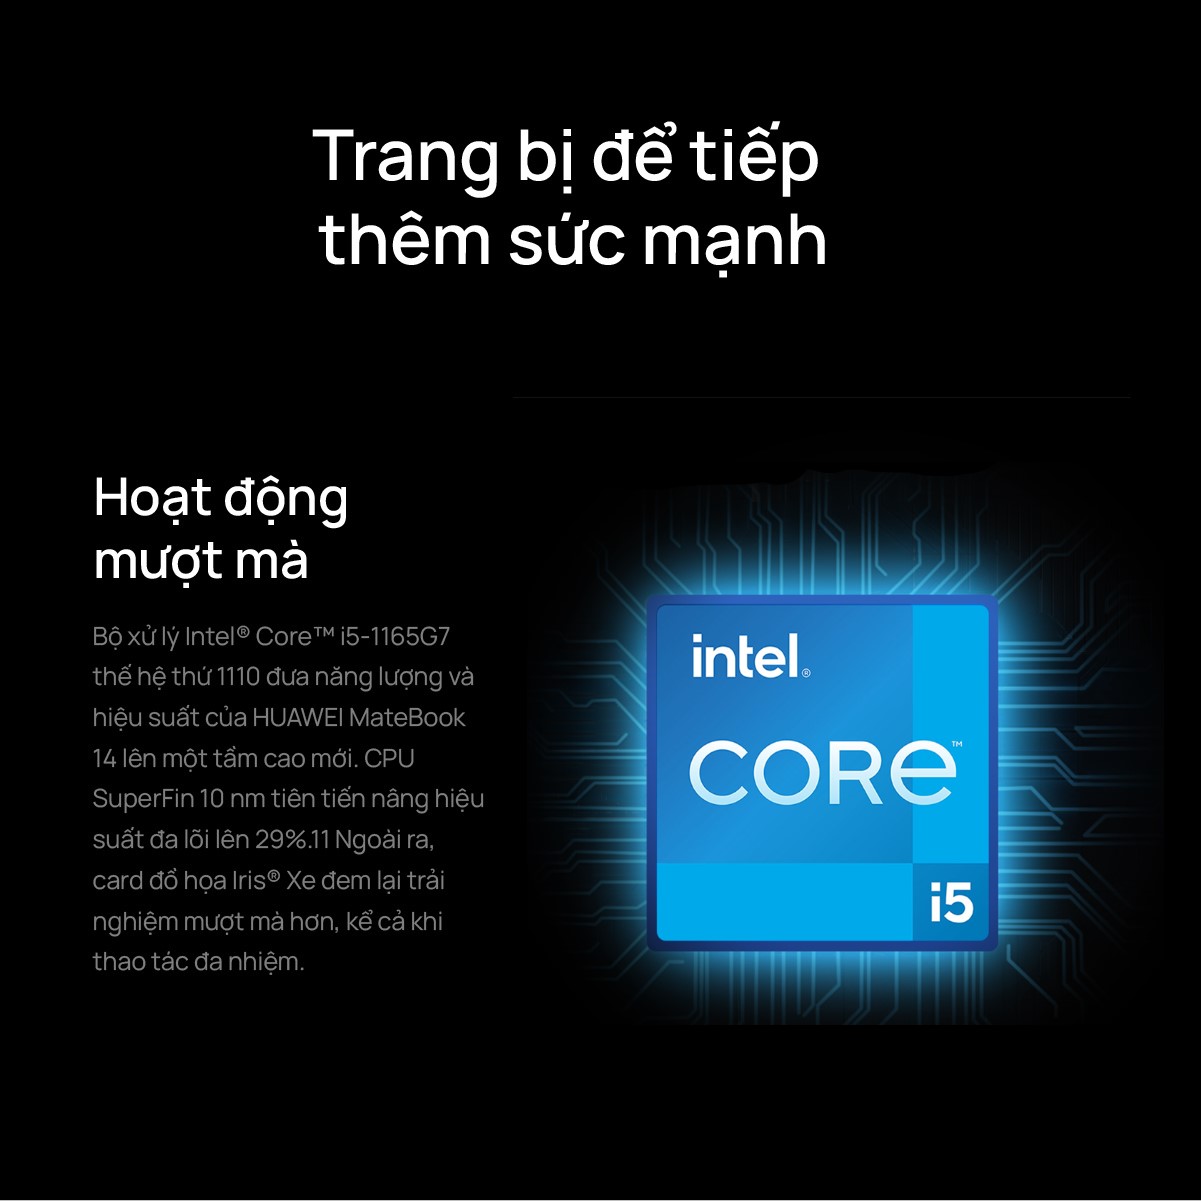 HUAWEI MateBook 14 trang bị chip COre i5 đủ sức chiến mọi tựa game